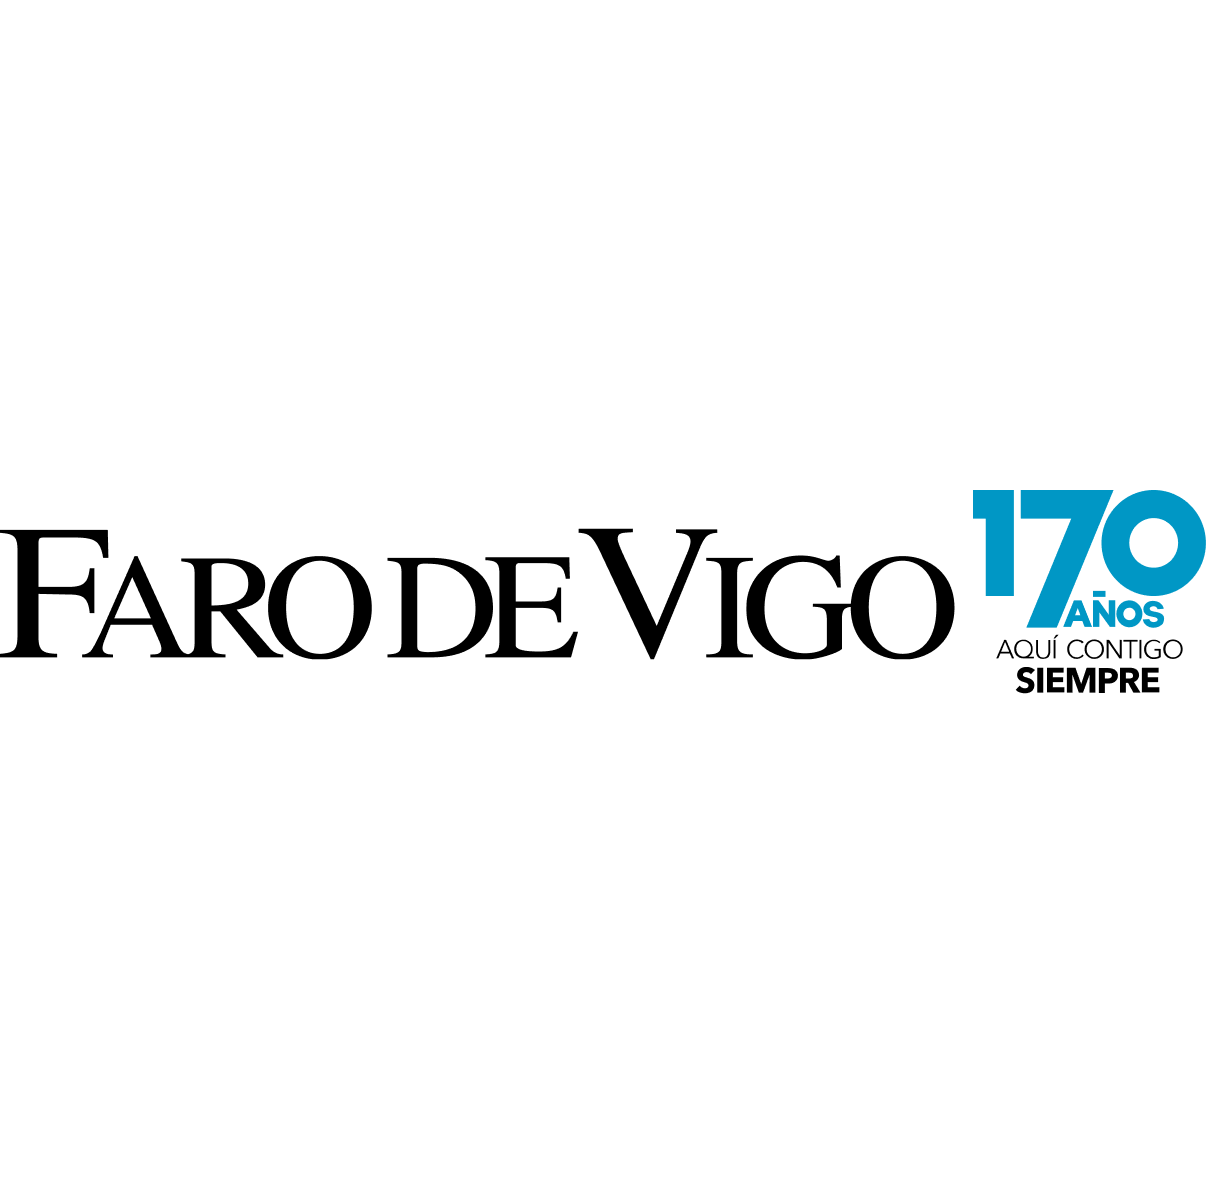 www.farodevigo.es